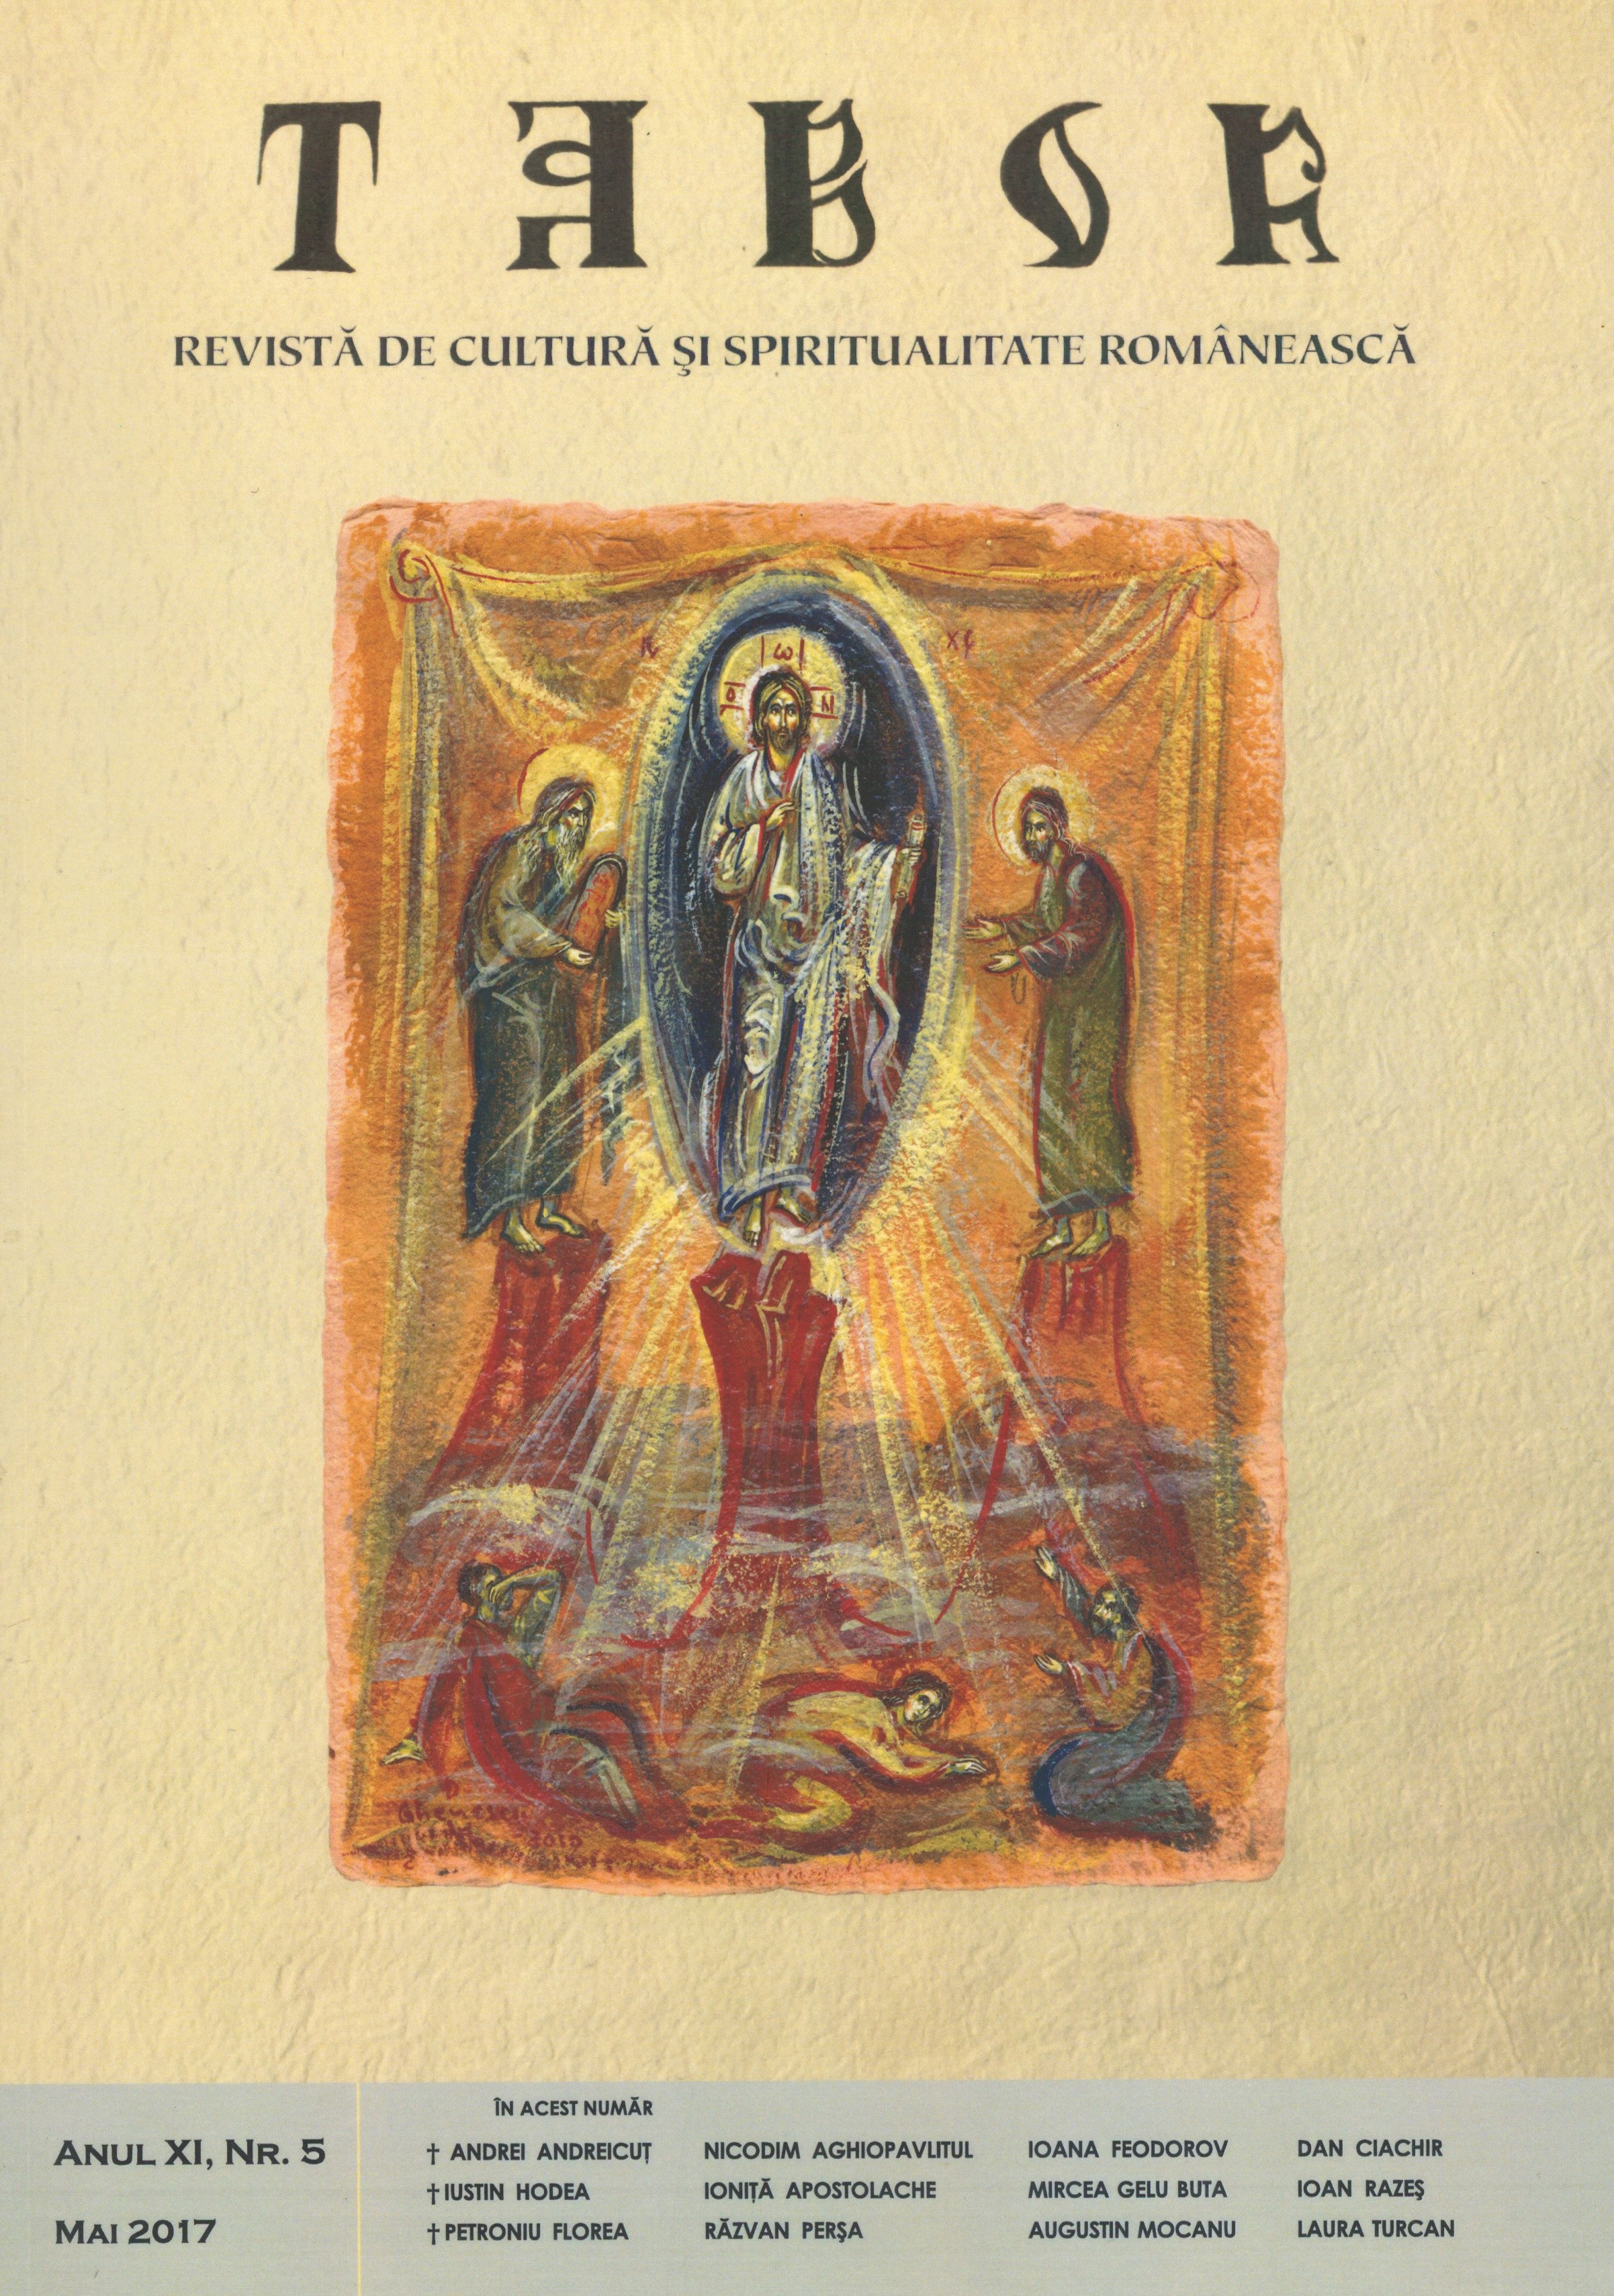 Aspecte religioase şi politice în portretele domnitorului Vasile Lupu şi ale familiei sale (frescă şi broderie)